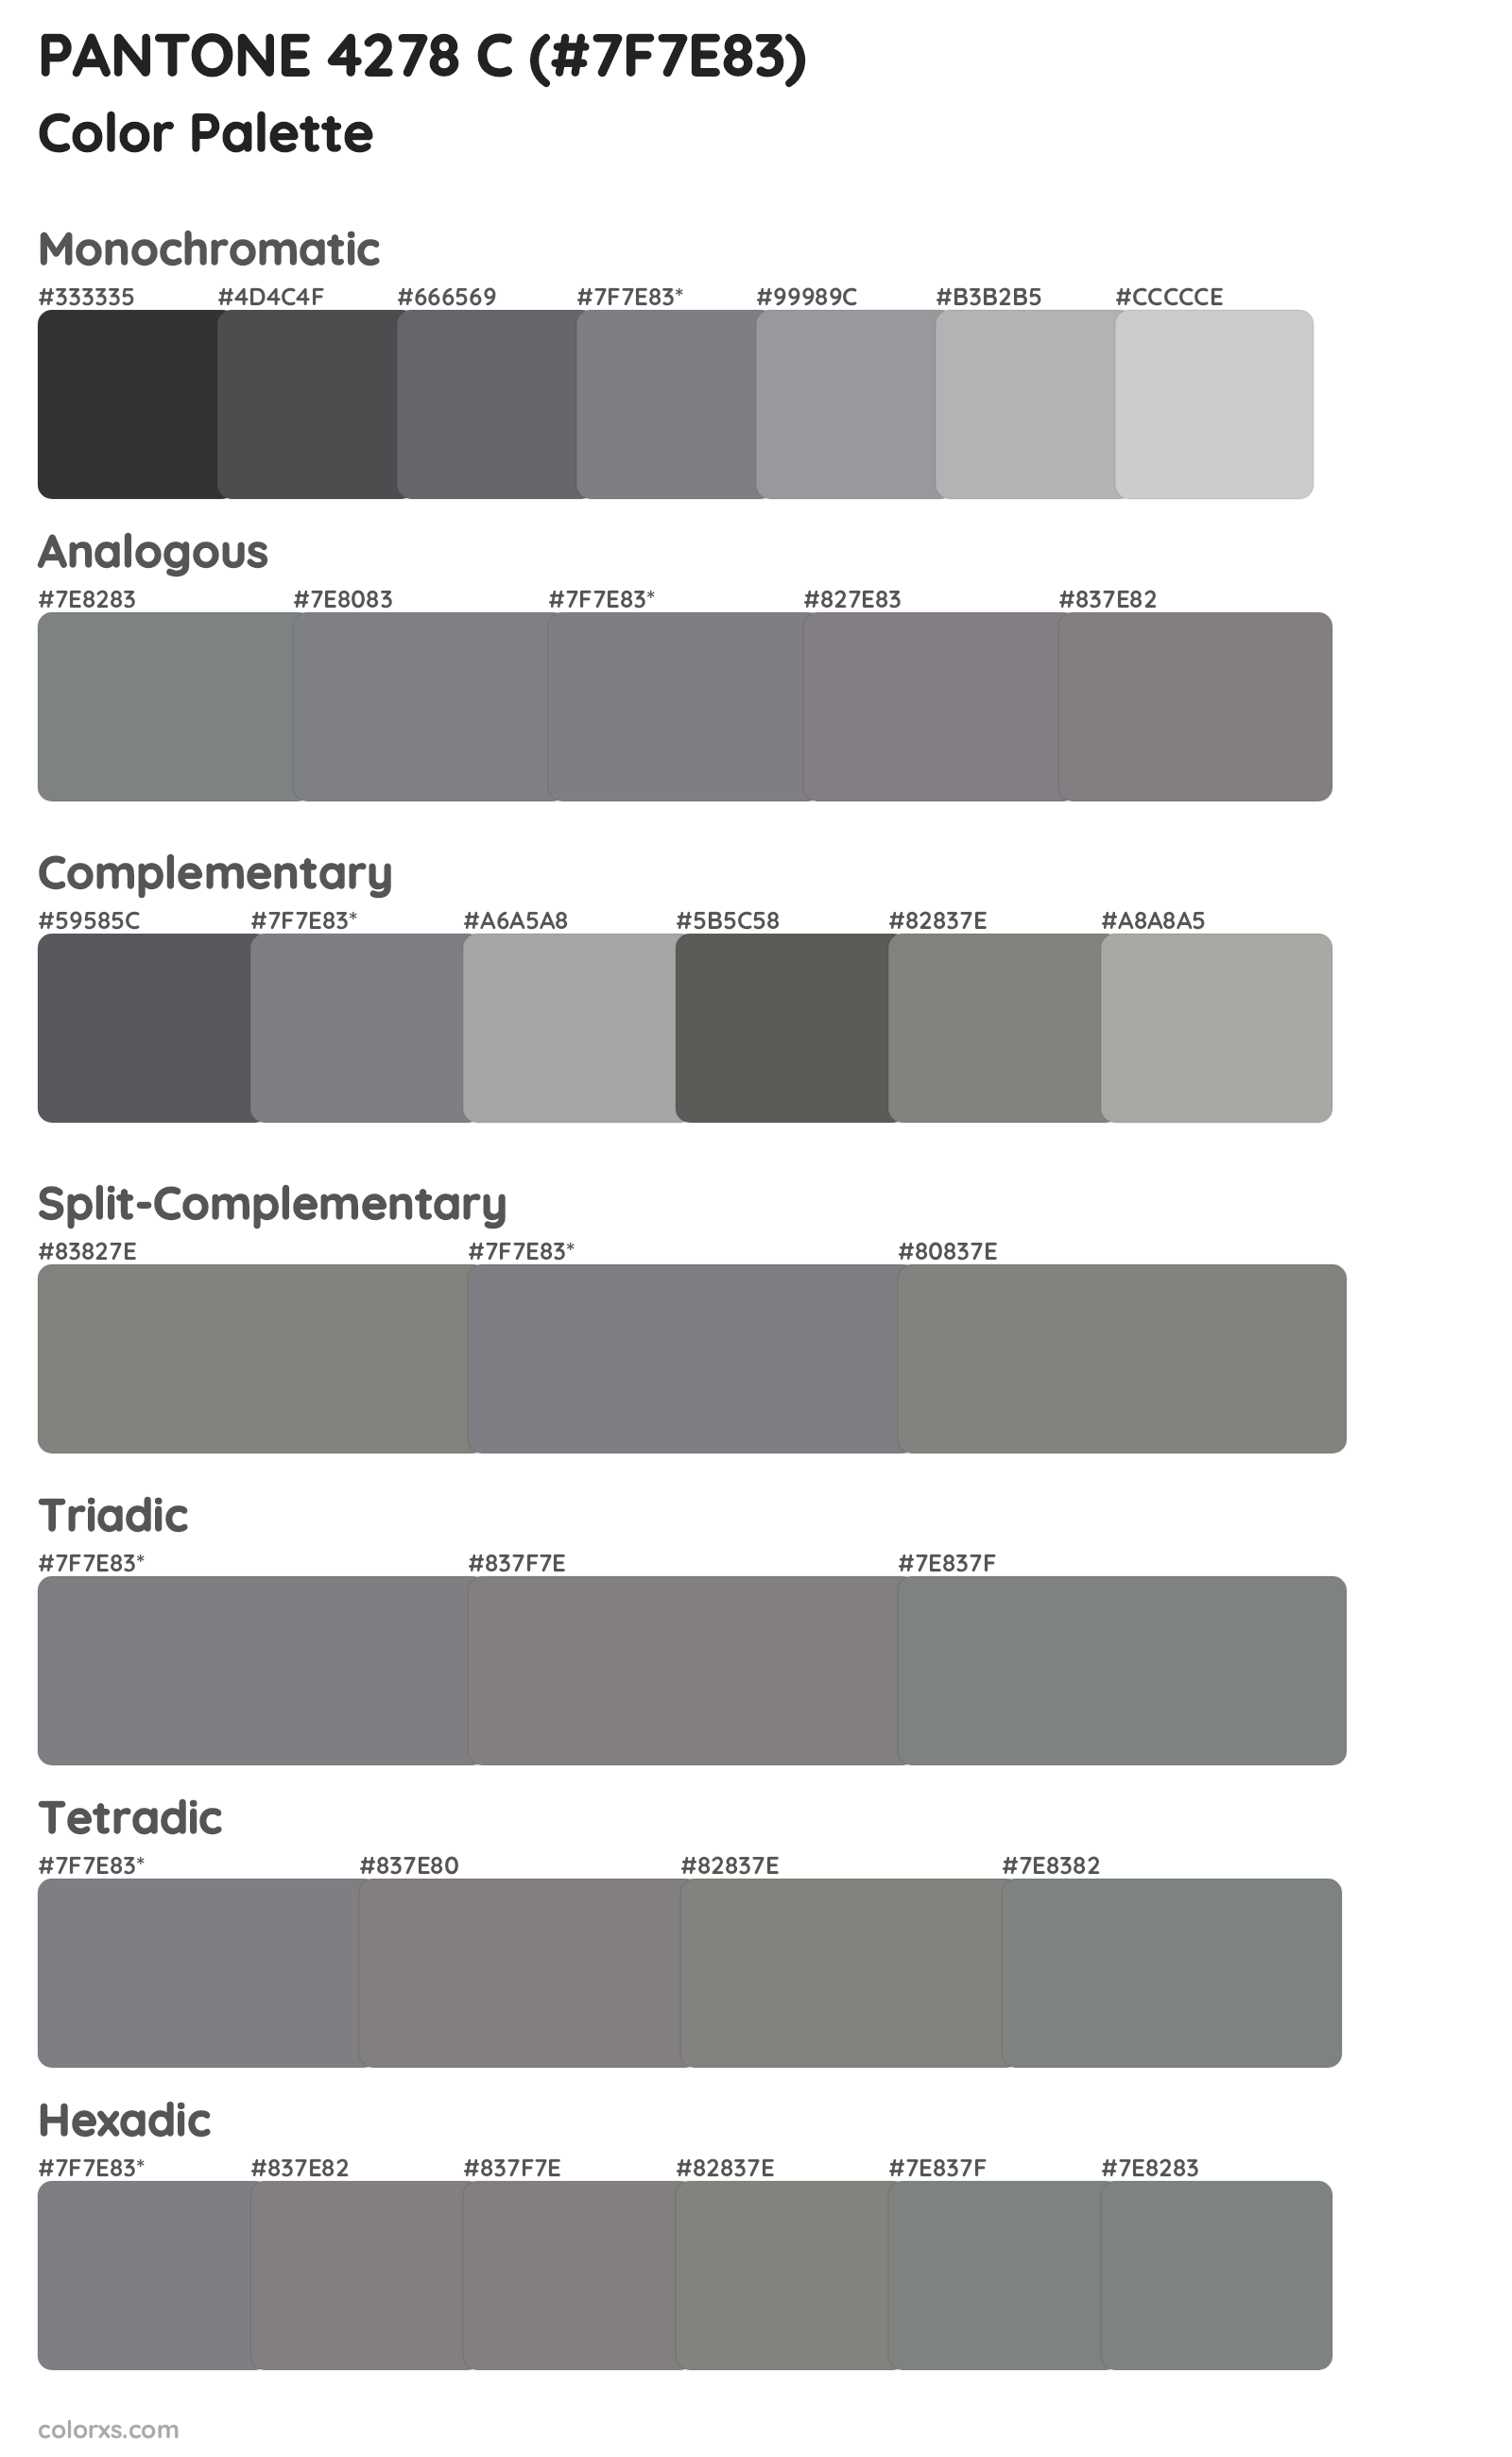 PANTONE 4278 C Color Scheme Palettes